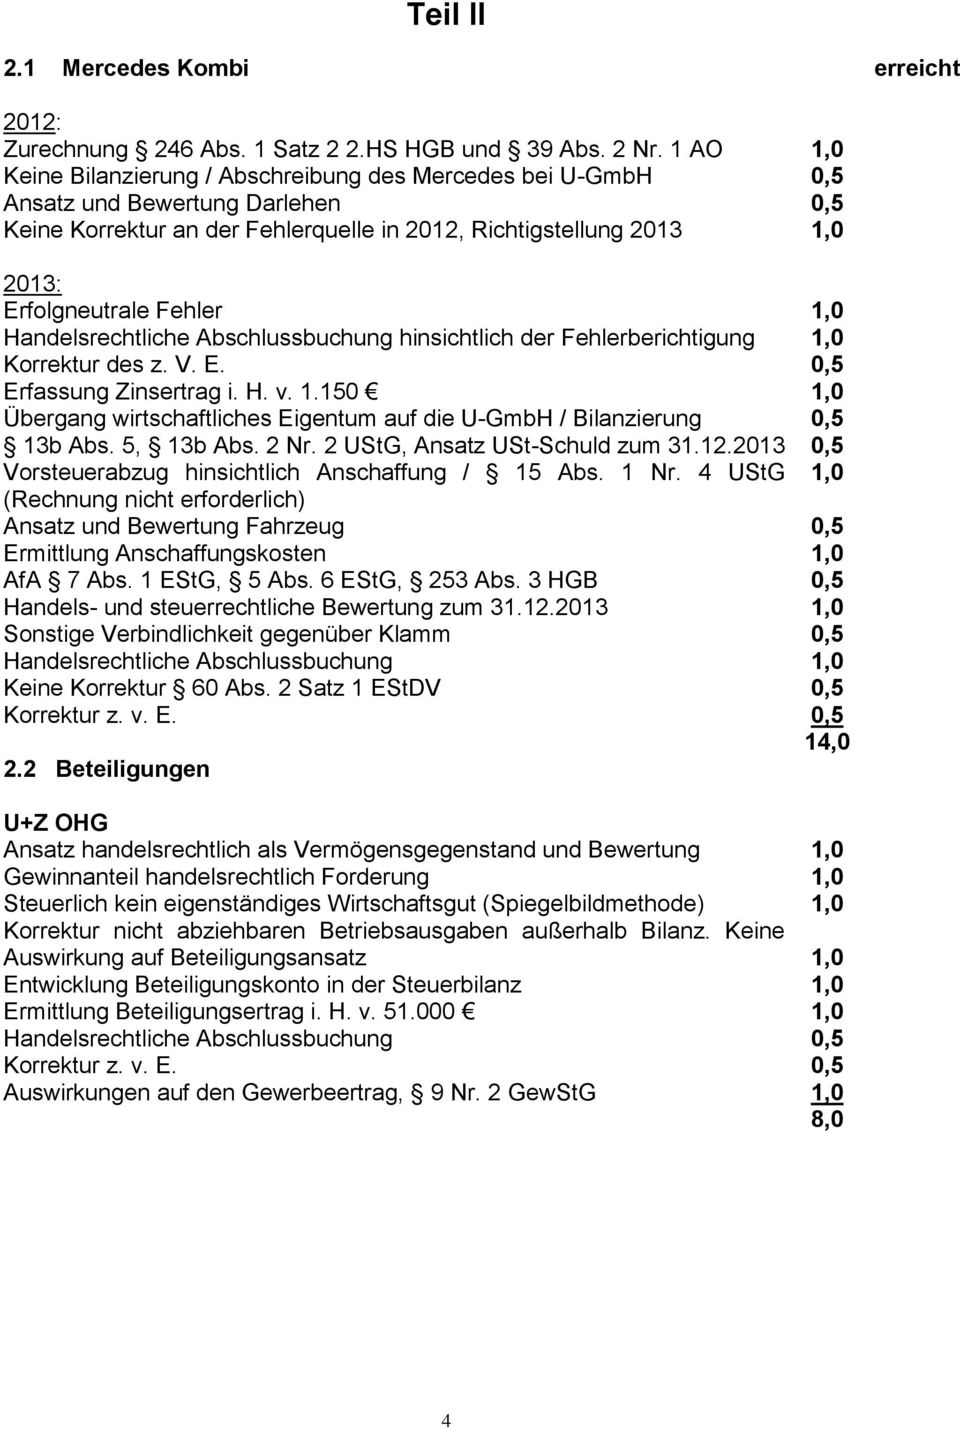 der Fehlerberichtigung Korrektur des z. V. E. Erfassung Zinsertrag i. H. v. 1.150 Übergang wirtschaftliches Eigentum auf die U-GmbH / Bilanzierung 13b Abs. 5, 13b Abs. 2 Nr.